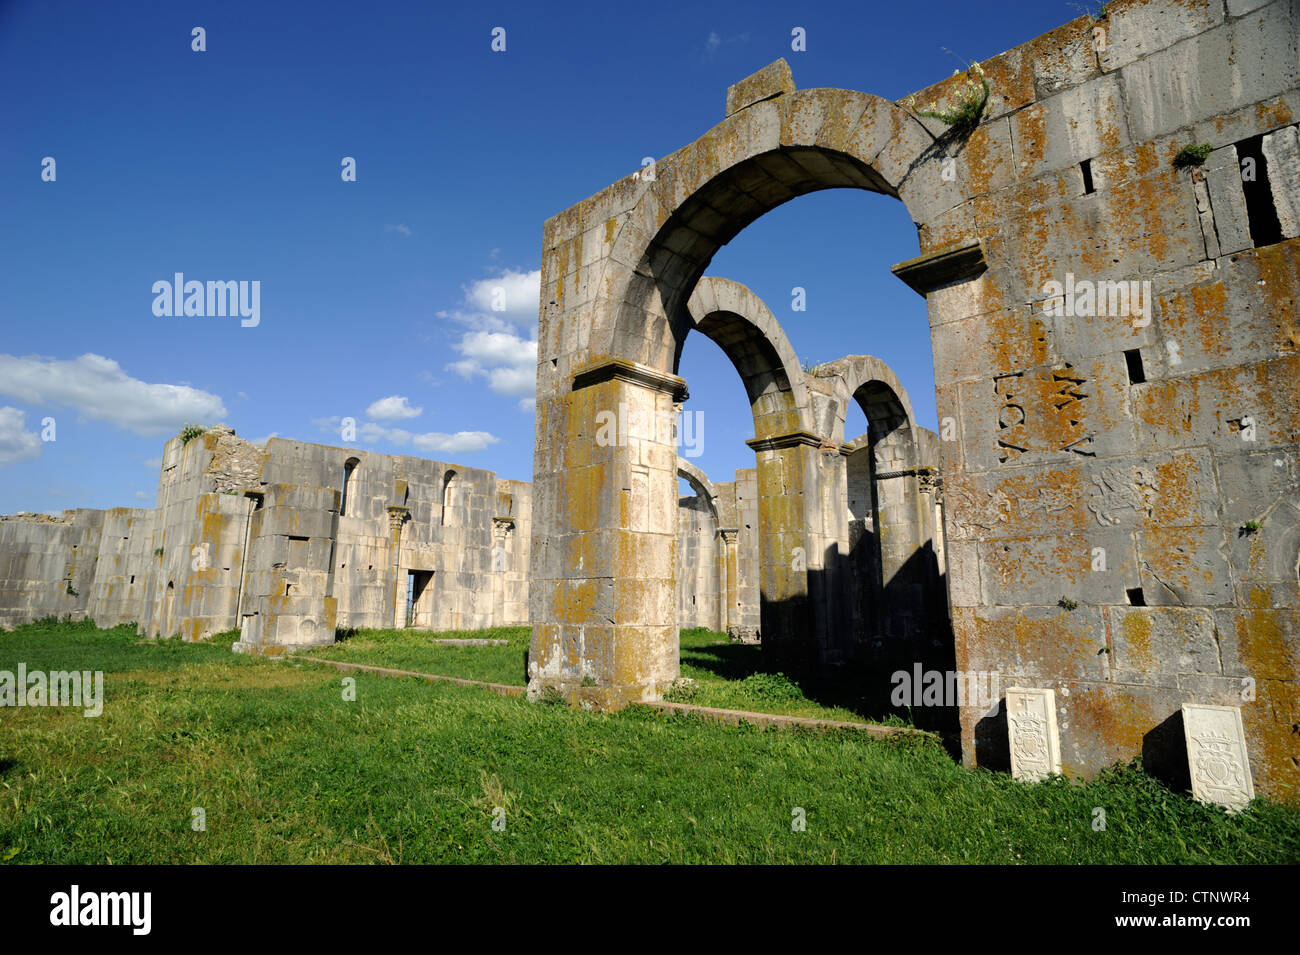 Italia, Basilicata, venosa, parco archeologico, rovine della chiesa medievale Foto Stock